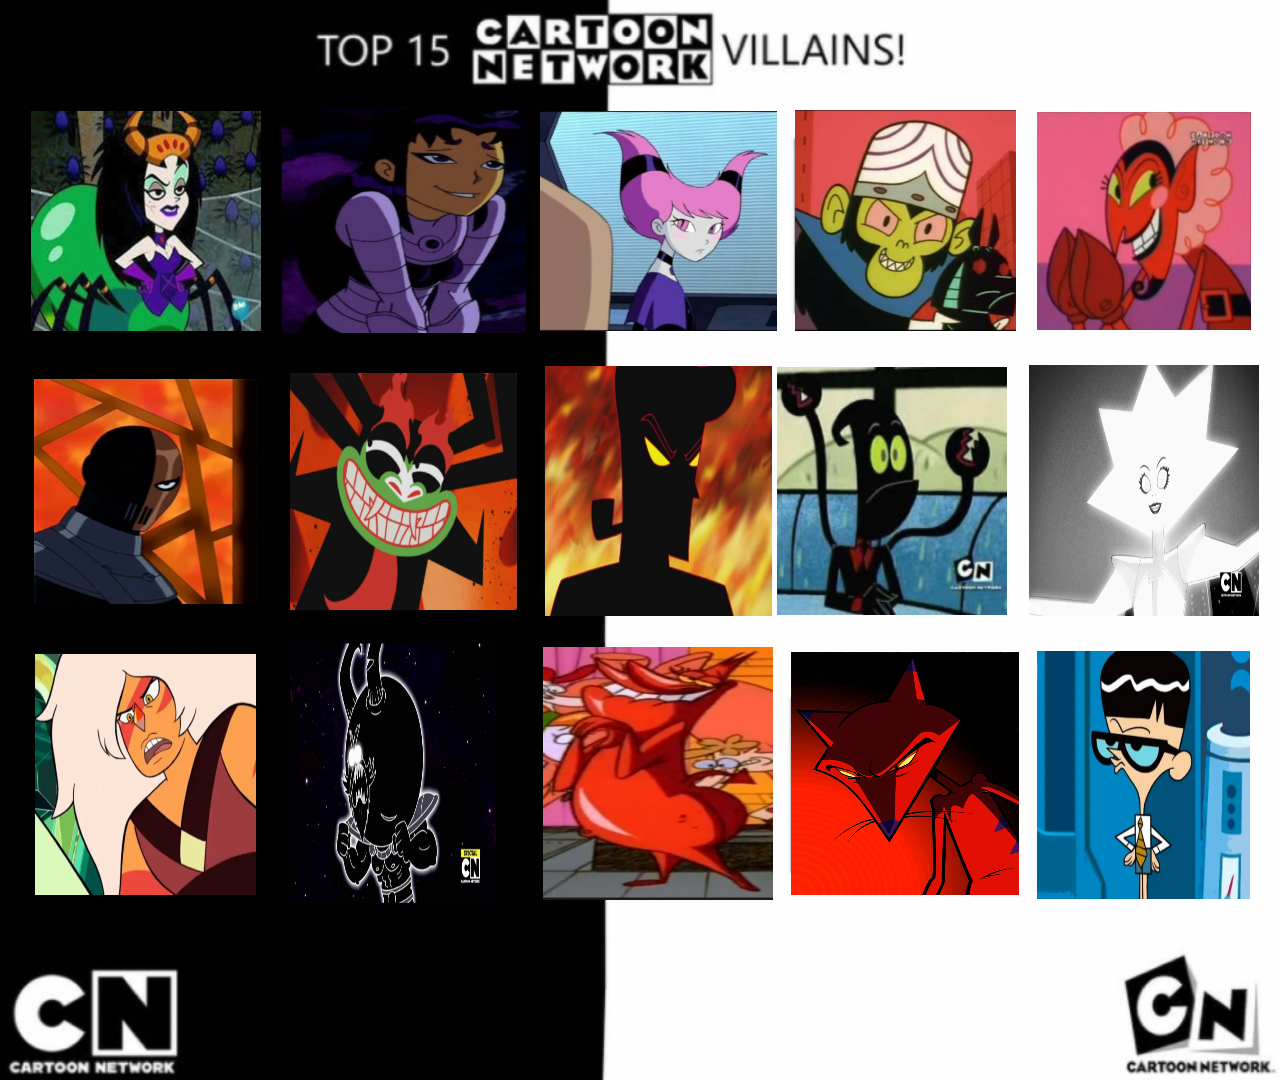 Top 15 Cartoon Network Villains by Eddsworldfangirl97 on DeviantArt